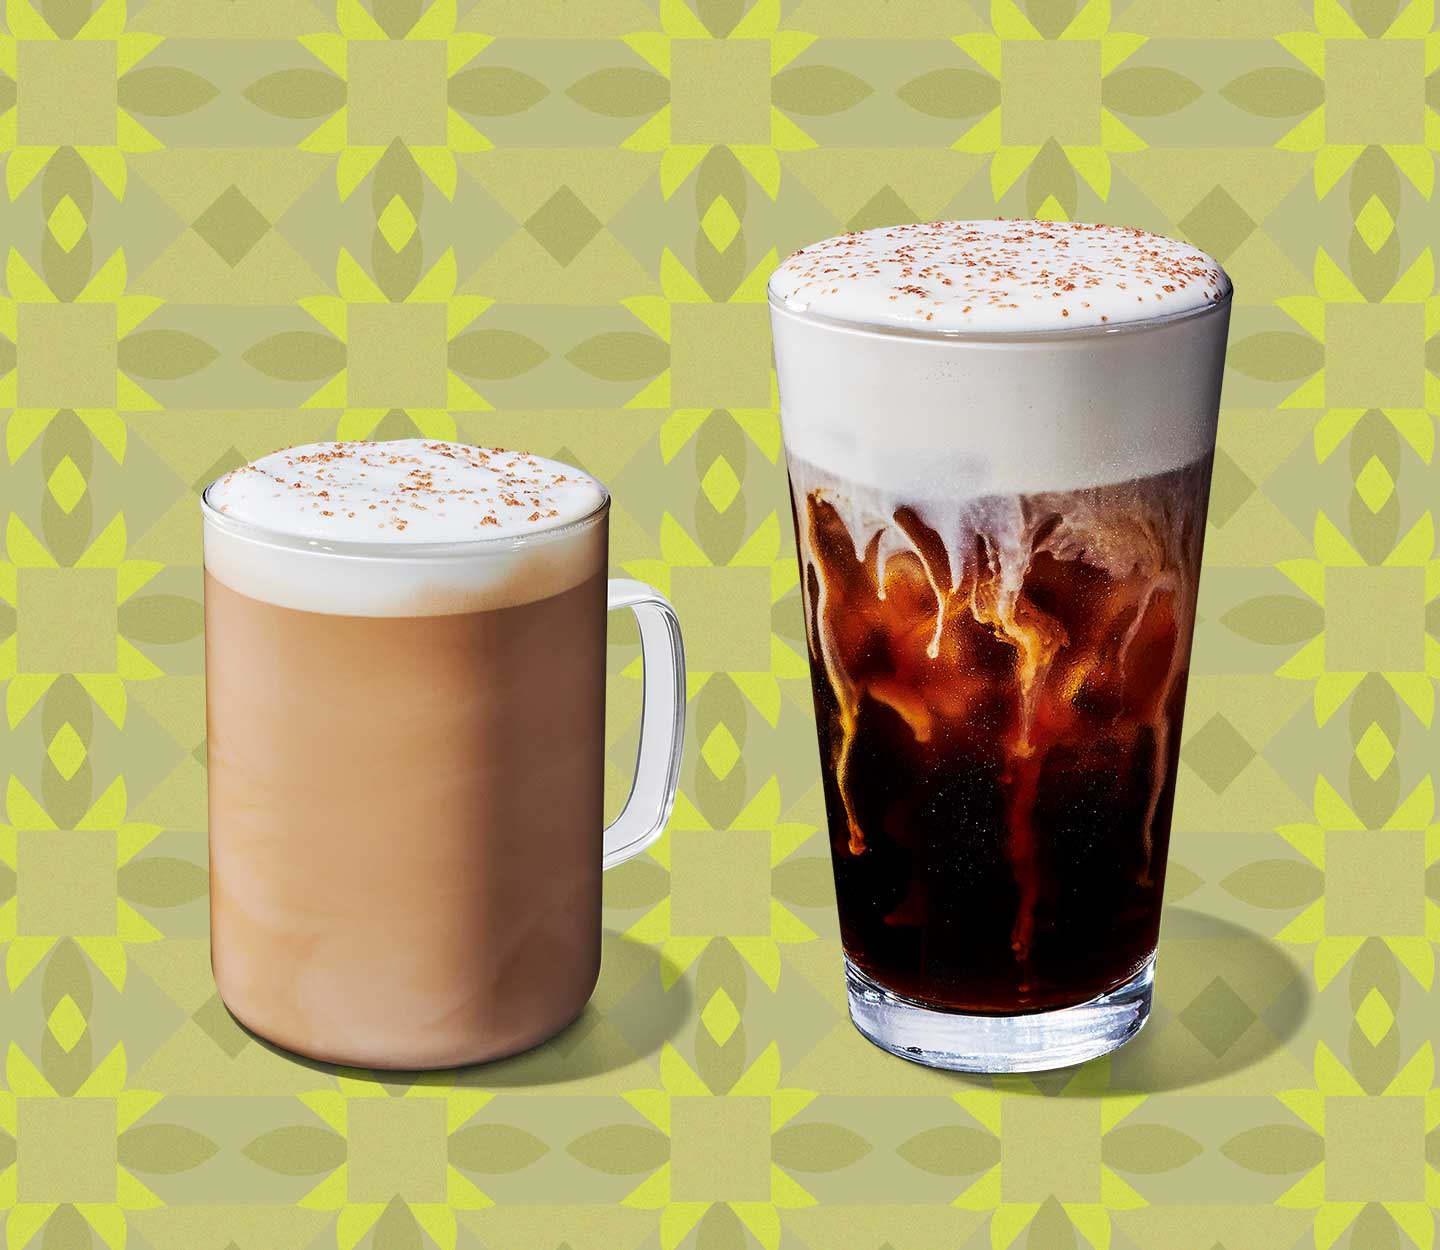 Un latte à côté d’un café glacé, tous deux garnis de mousse et servis dans des verres transparents.